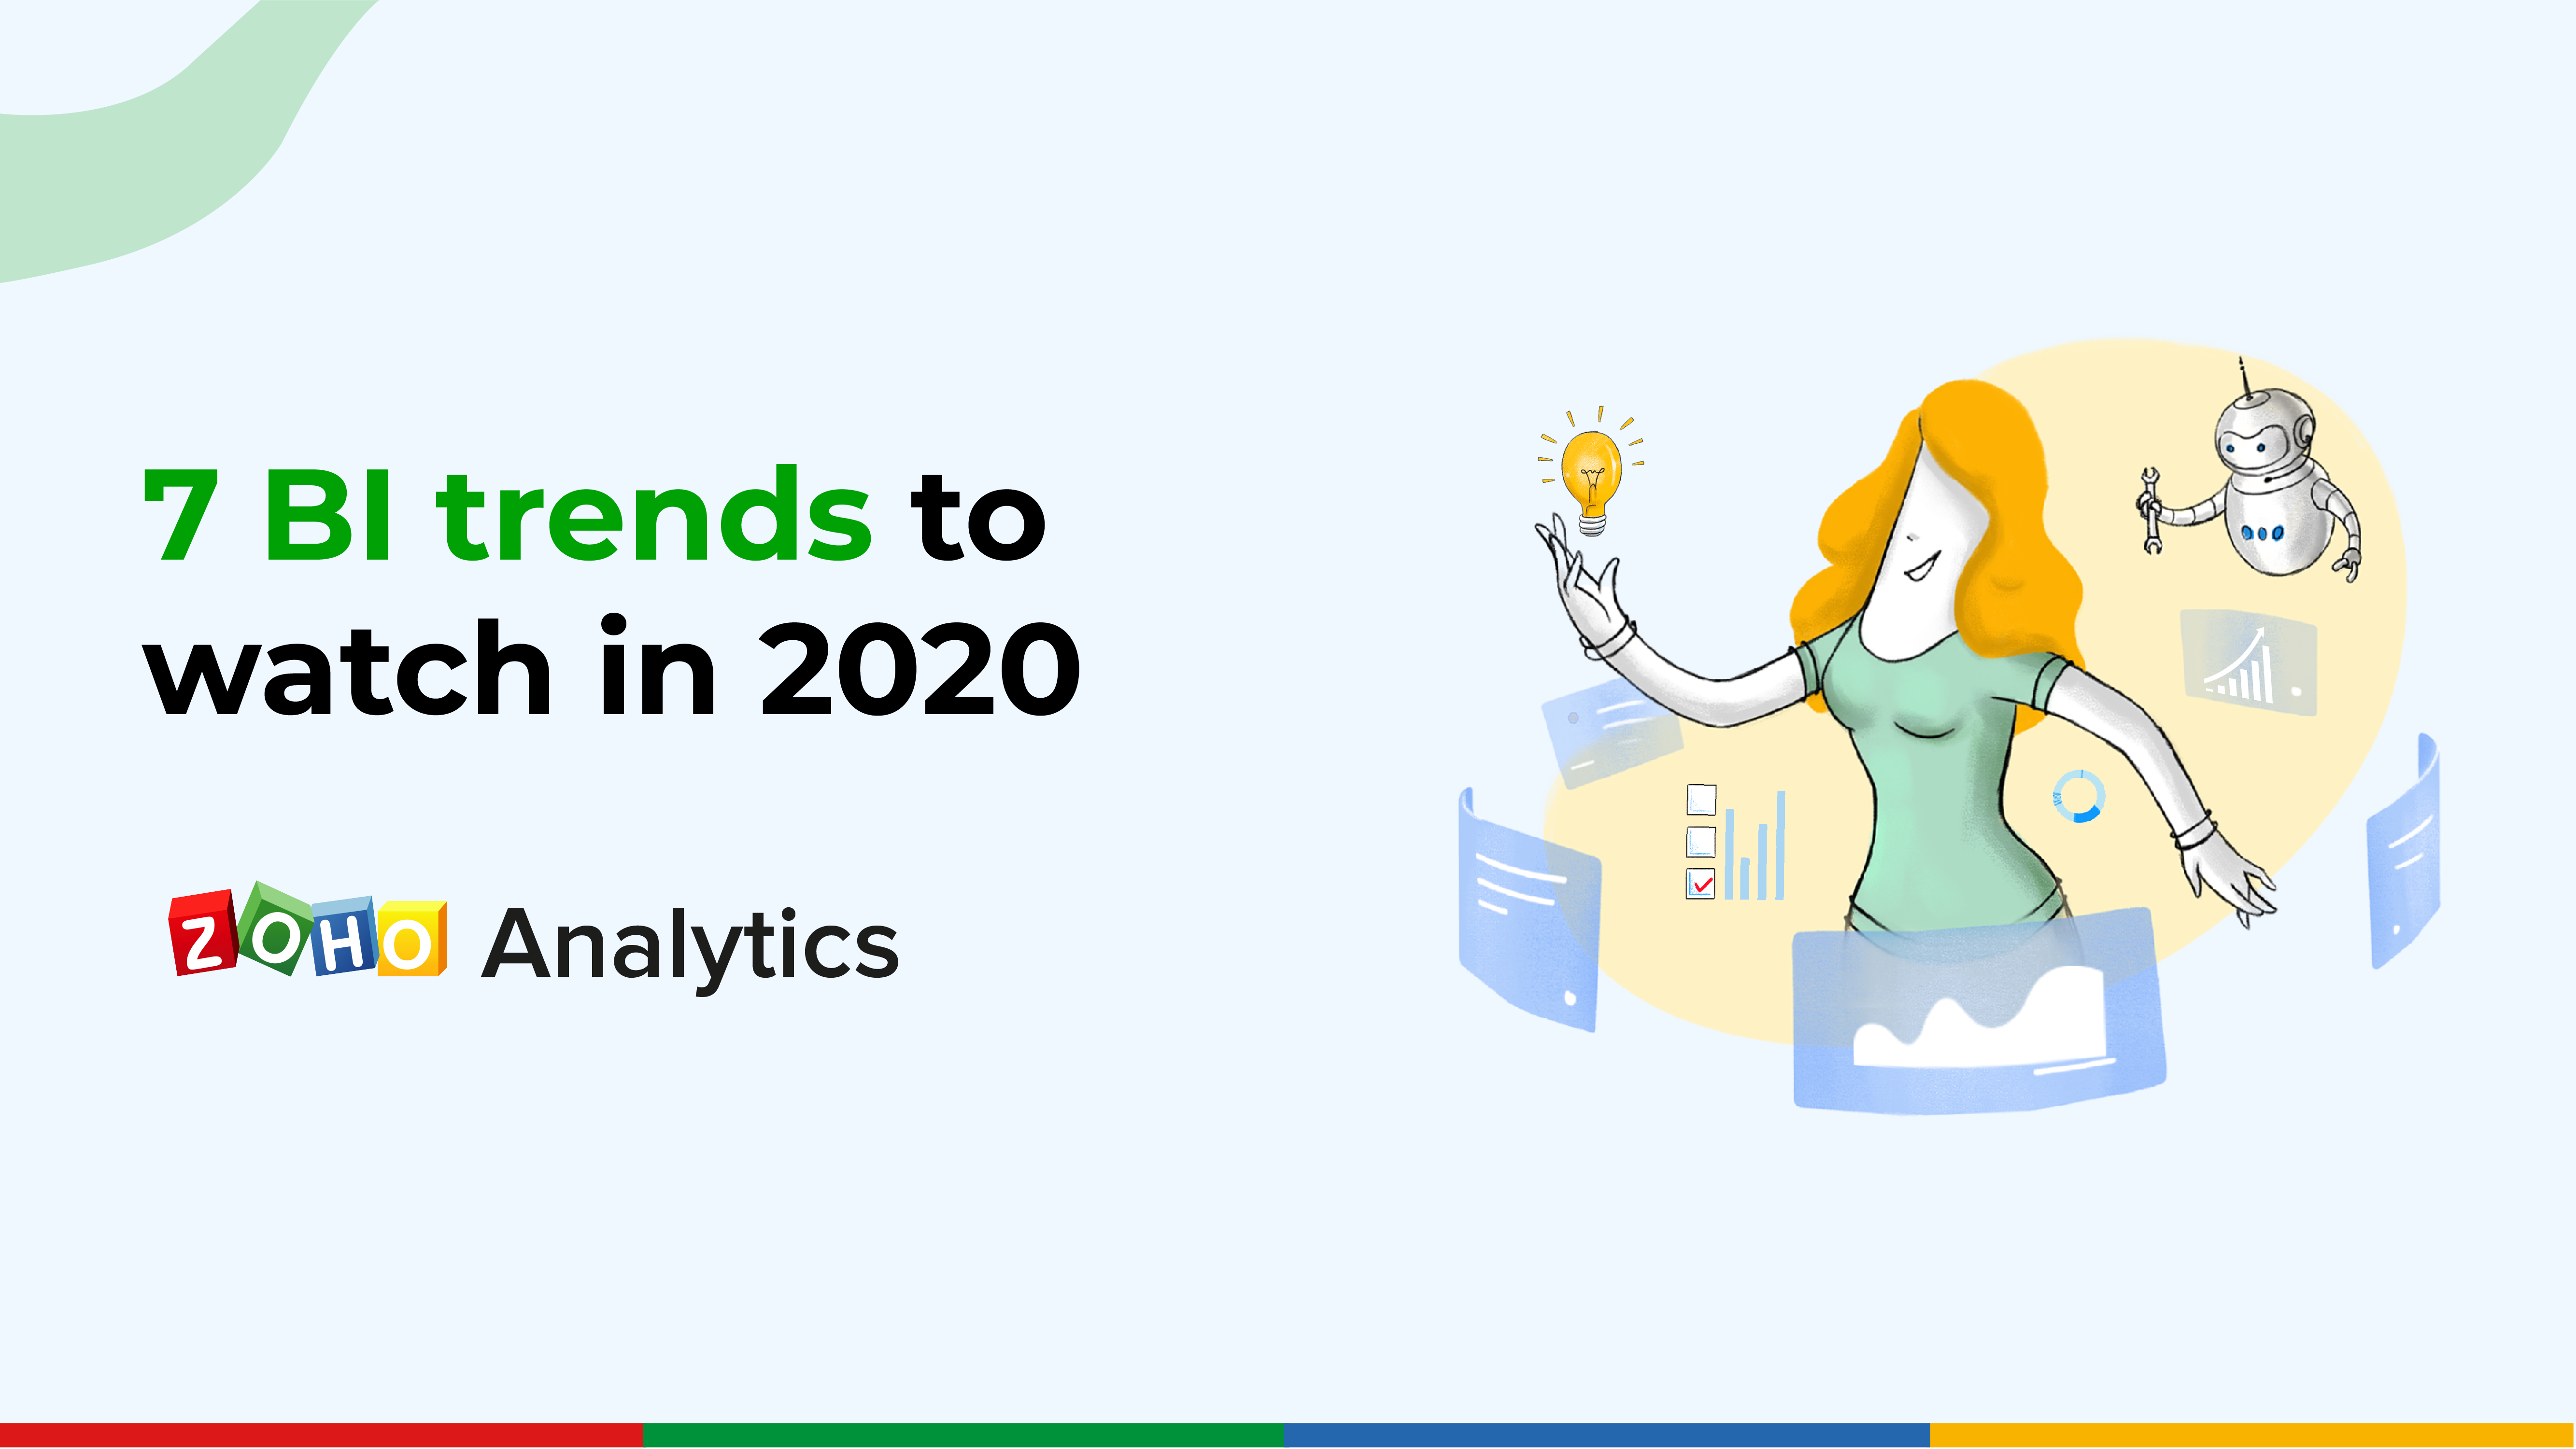 Top 7 BI trends to watch in 2020